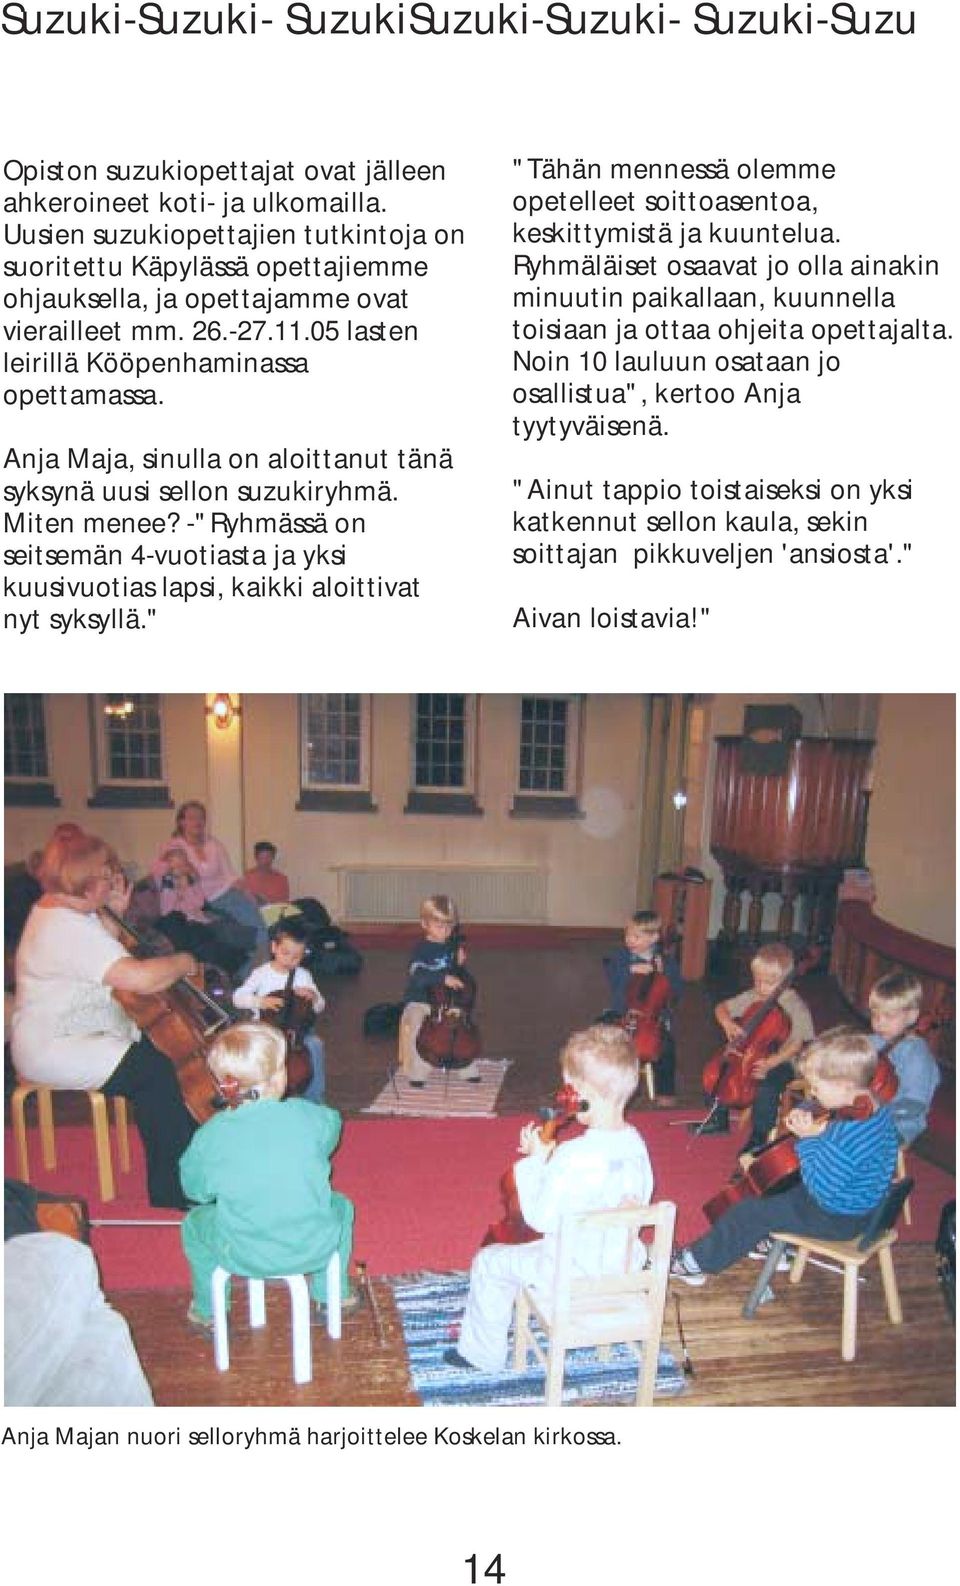 Anja Maja, sinulla on aloittanut tänä syksynä uusi sellon suzukiryhmä. Miten menee? -"Ryhmässä on seitsemän 4-vuotiasta ja yksi kuusivuotias lapsi, kaikki aloittivat nyt syksyllä.